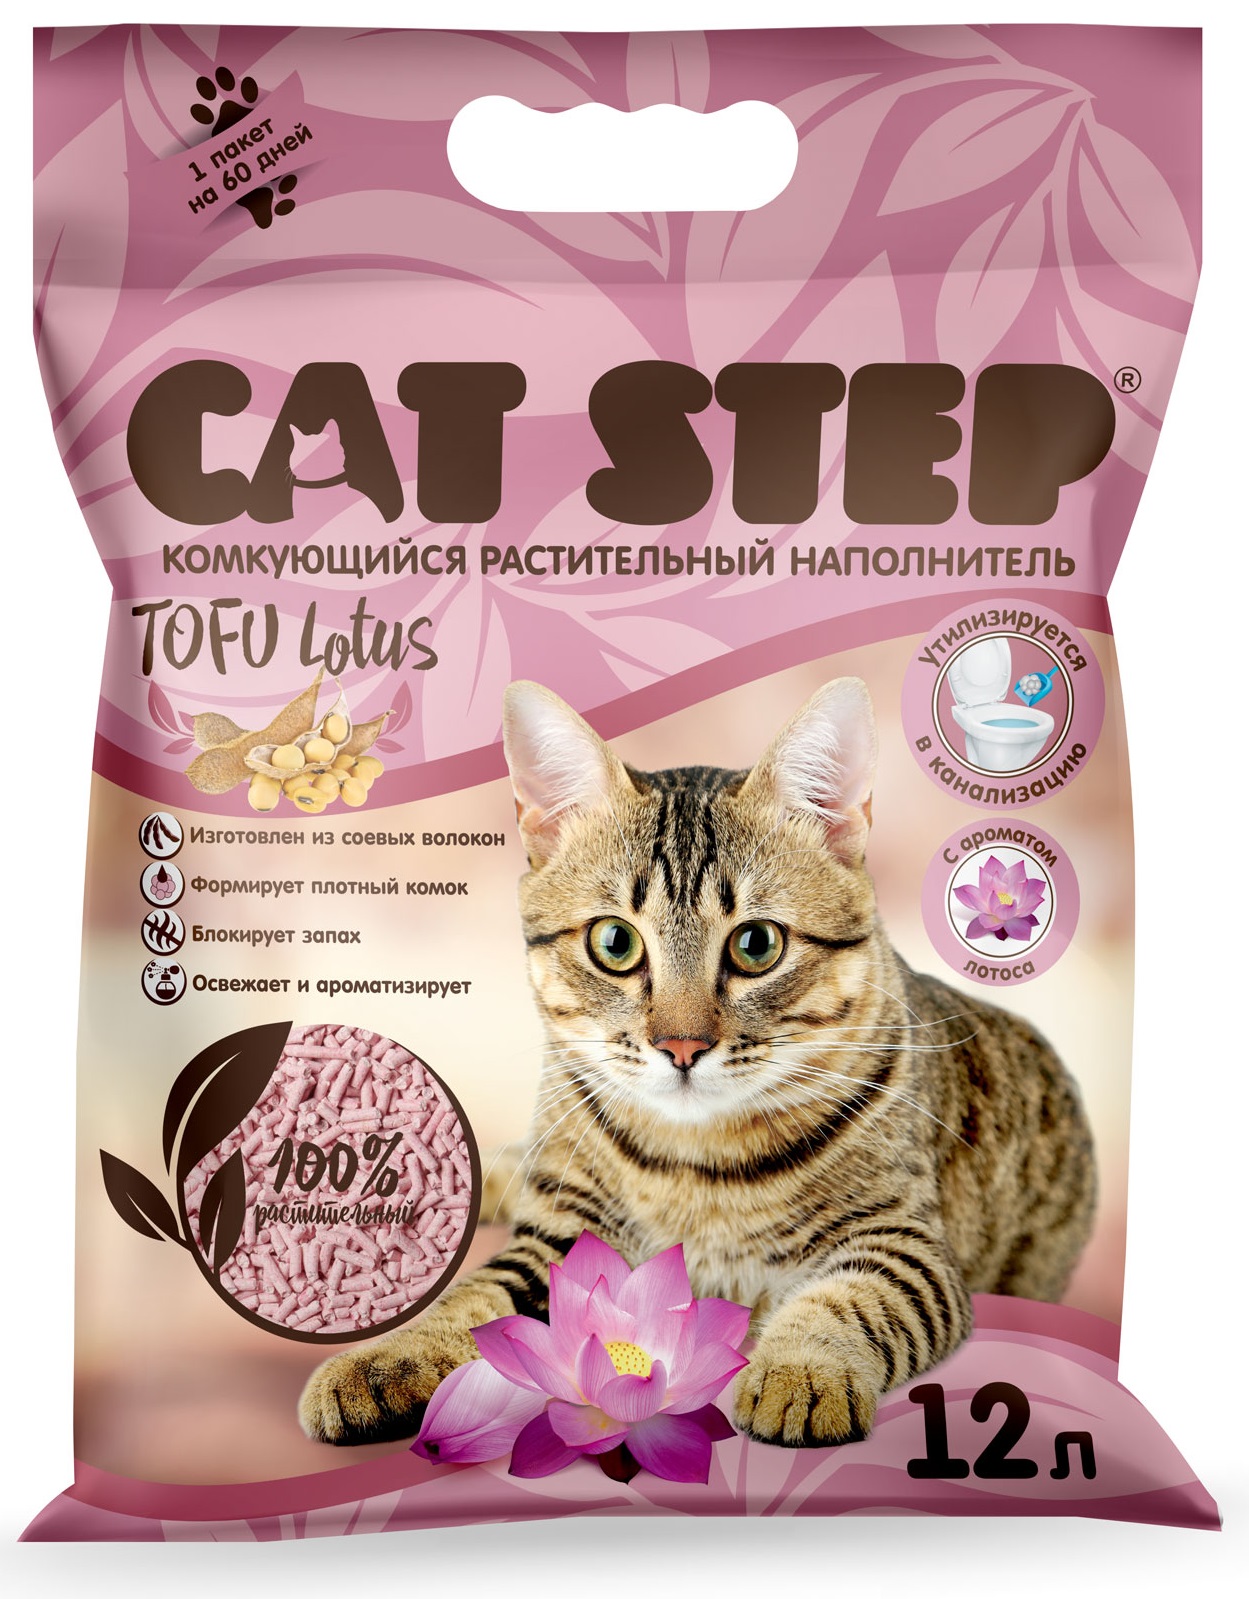 Наполнитель комкующийся растительный для кошачьего туалета Cat step tofu lotus 12 л лотос